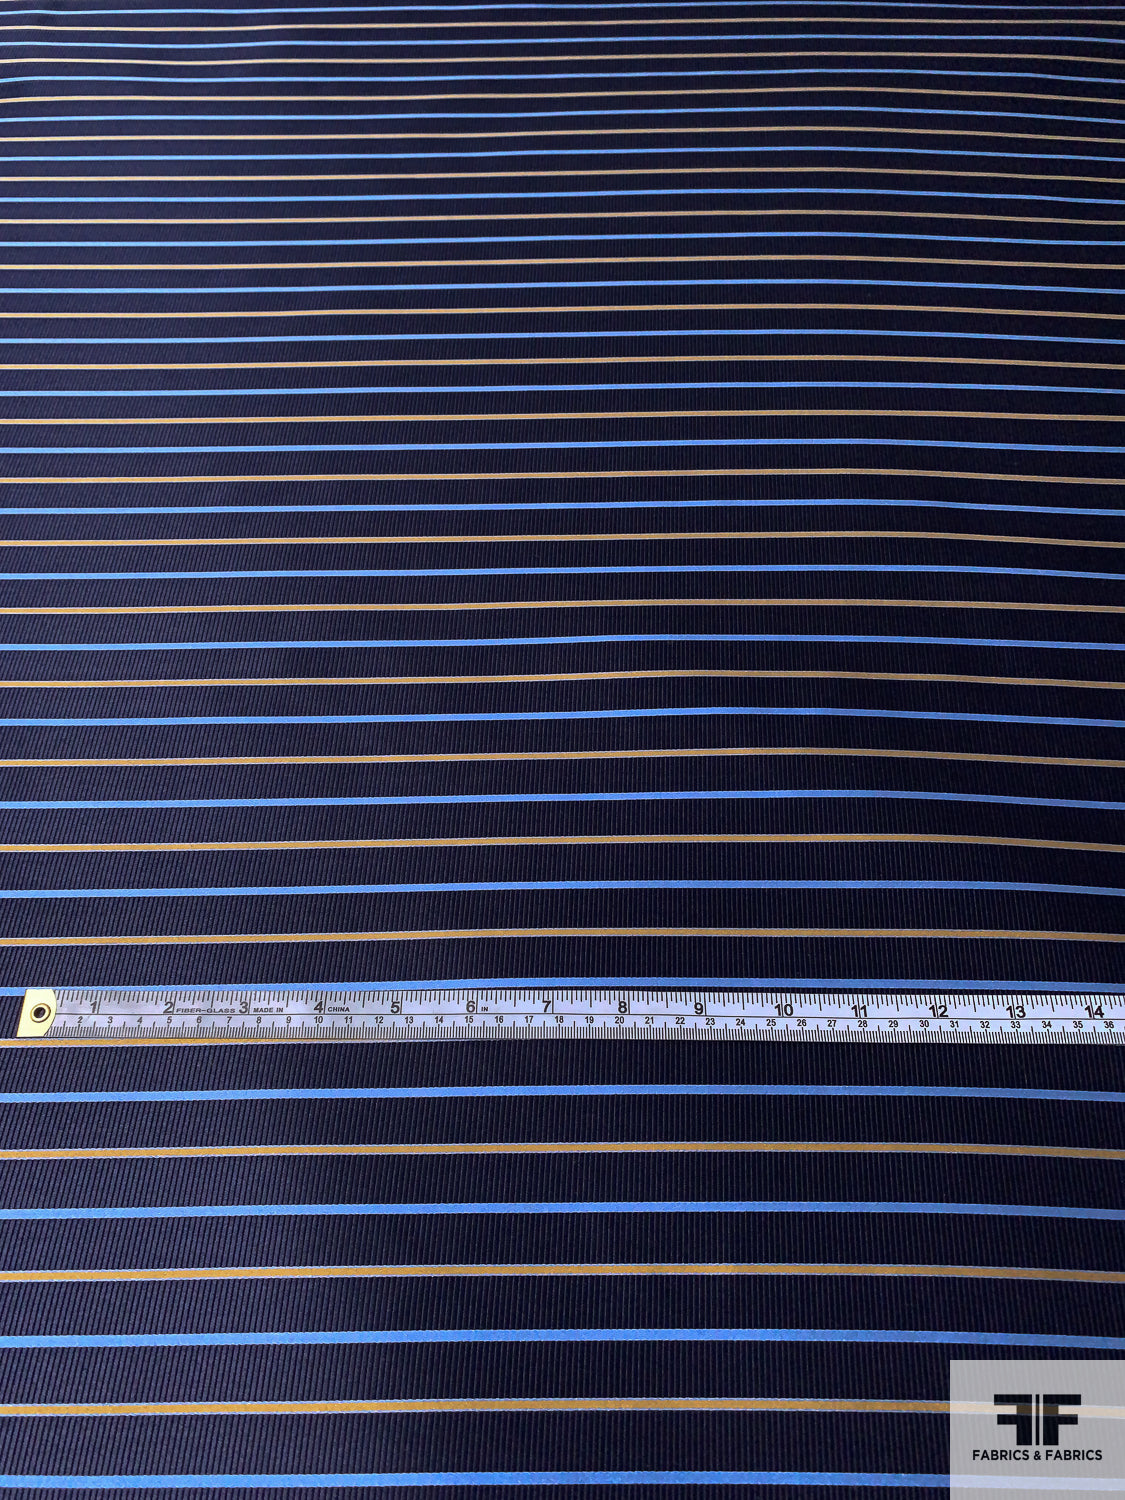 Horizontal Striped Silk Necktie Jacquard Brocade - Navy / Carolina Blue / Turmeric